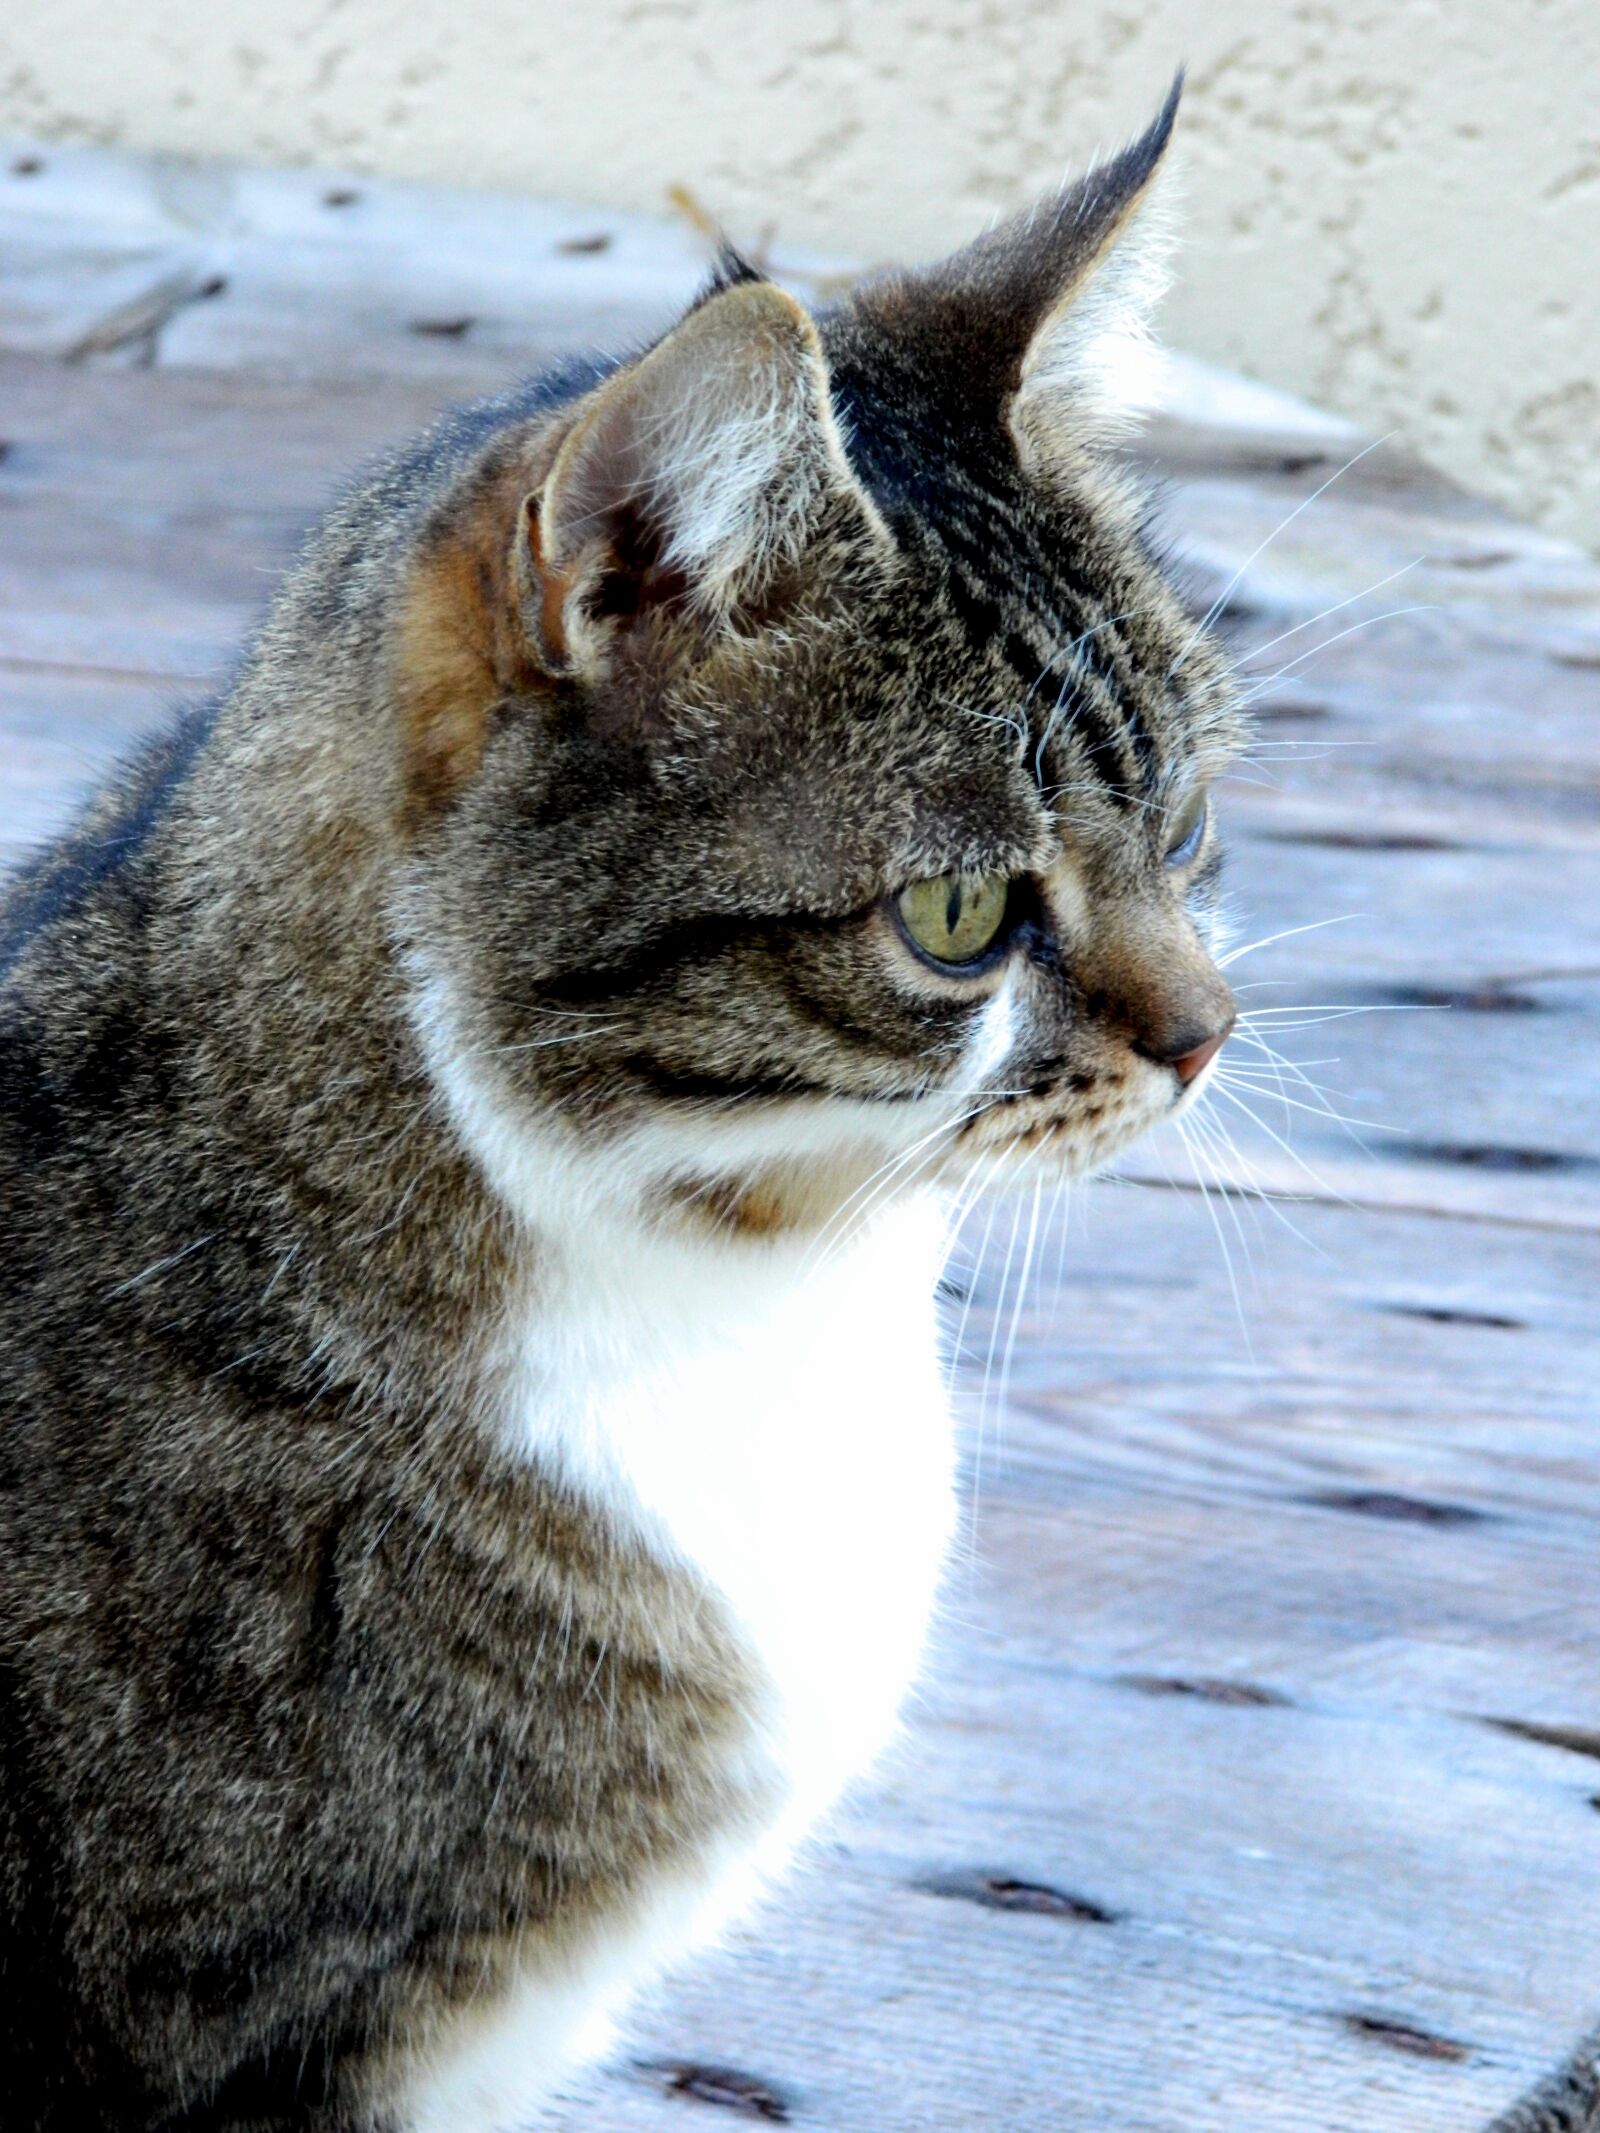 Nikon COOLPIX L310 sample photo. Cat, animals, portrait photography